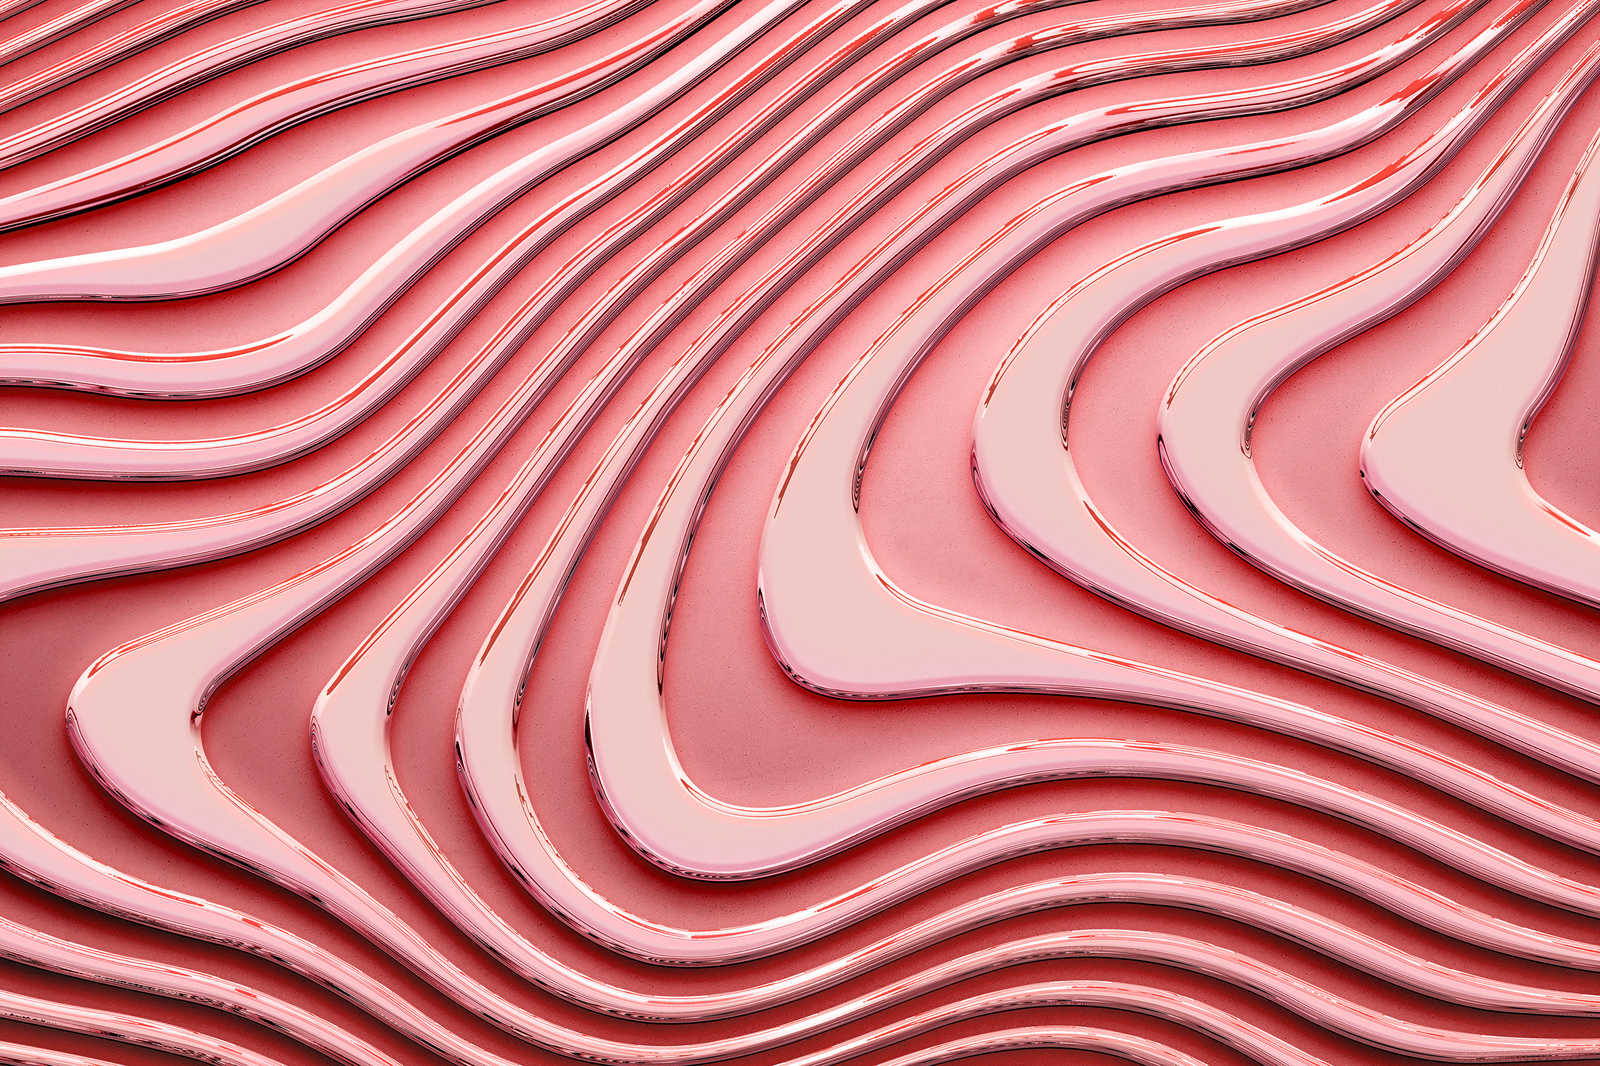             Toile avec lignes ondulées et ombres | rose, pink - 0,90 m x 0,60 m
        